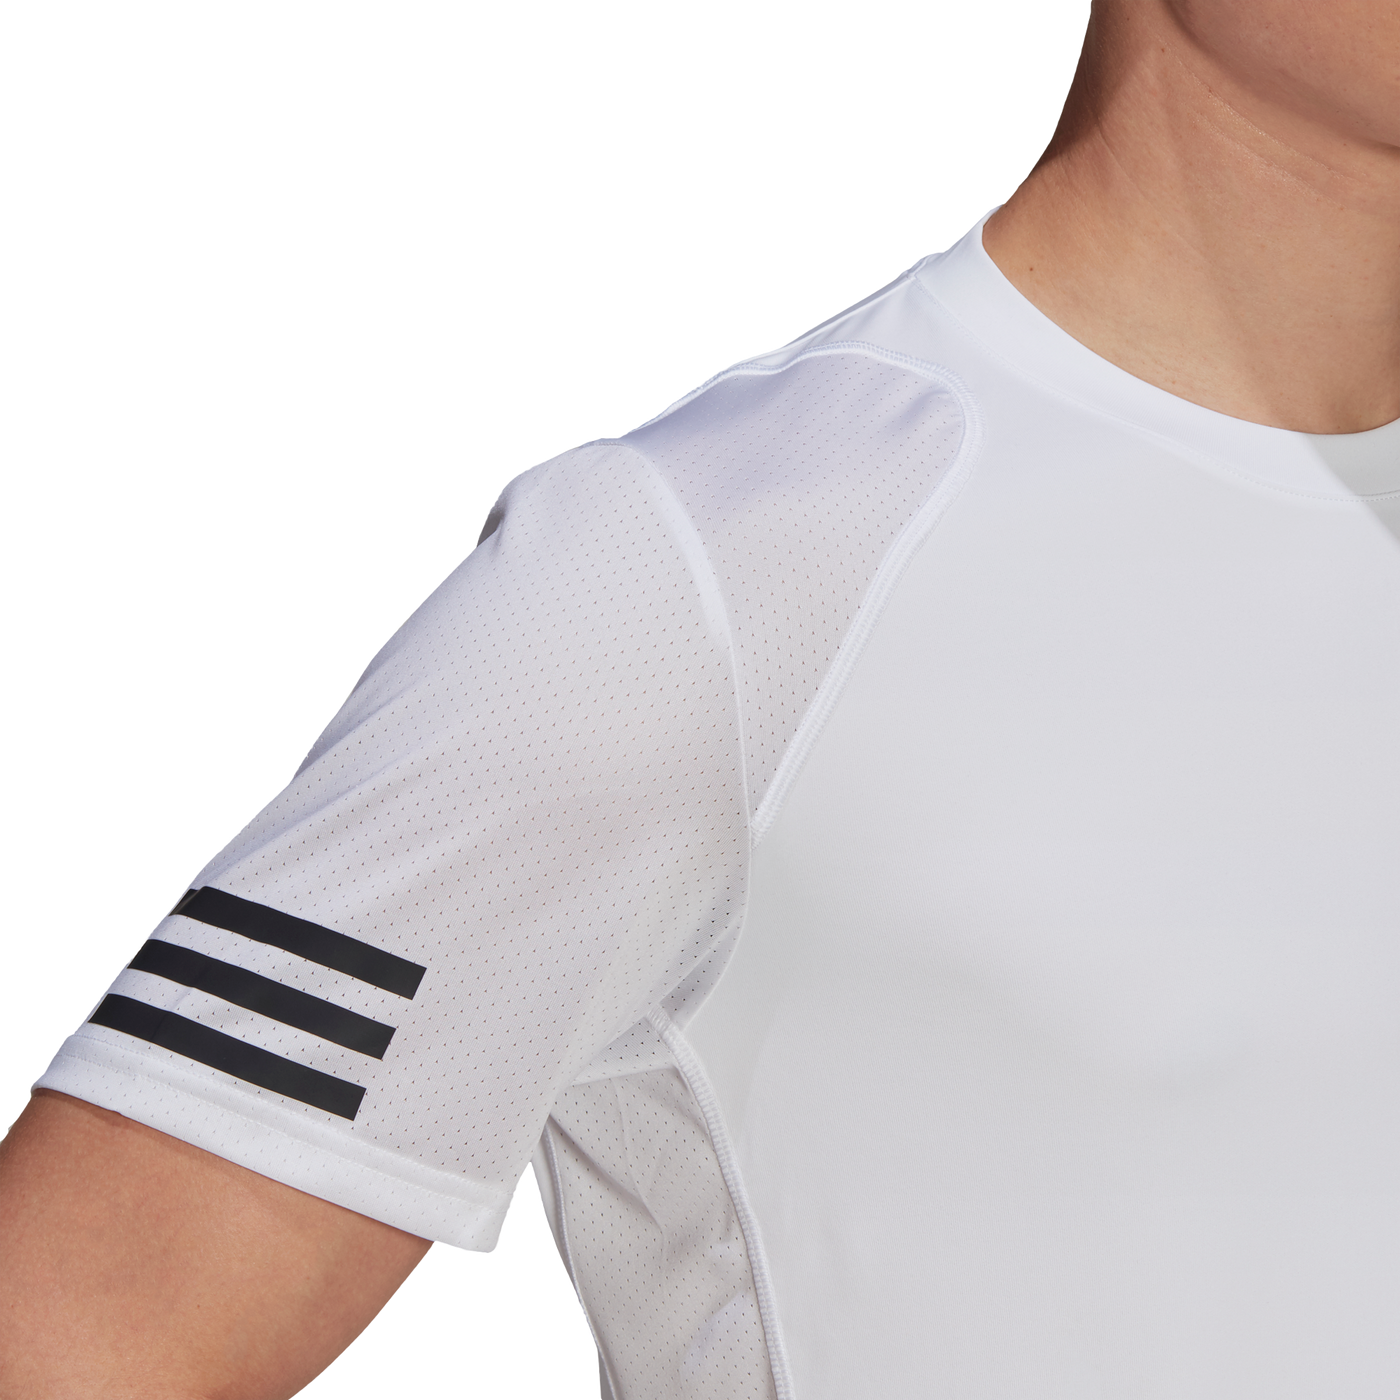 Adidas Club 3-Stripe Tennis T-Shirt - White/Black